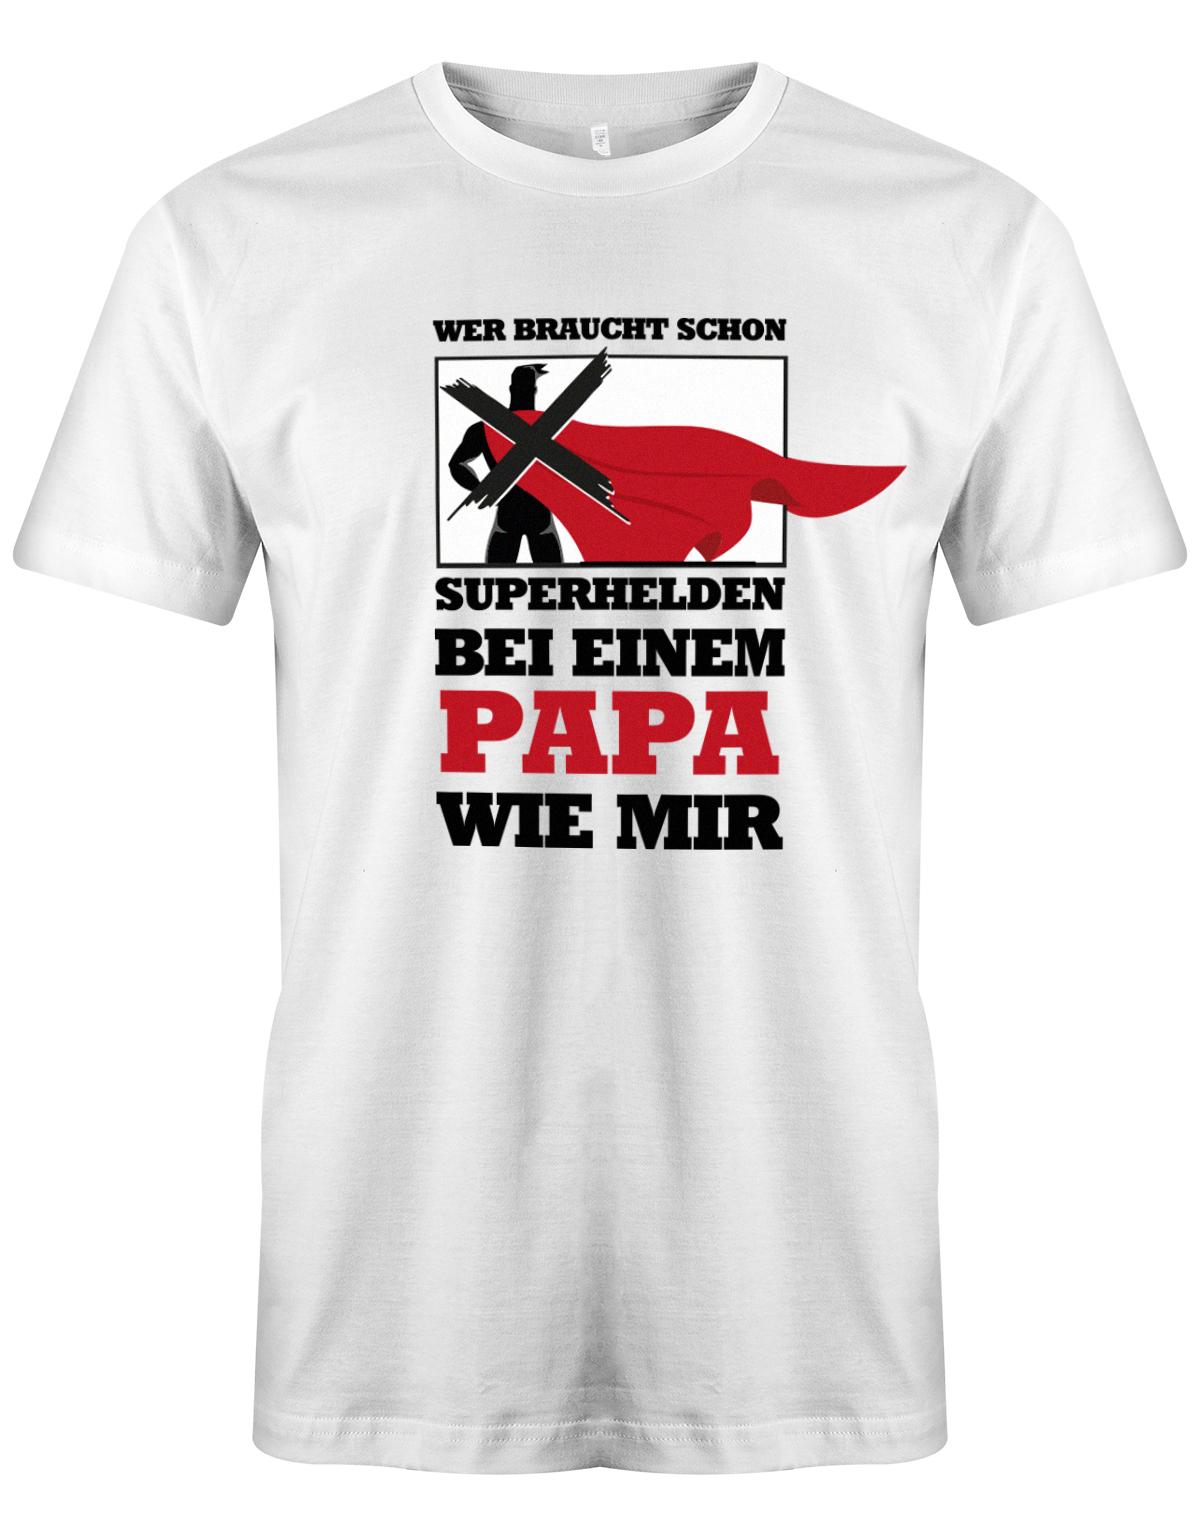 Wer-braucht-schon-Superhelden-bei-einem-Papa-wie-mir-herren-Shirt-Weiss